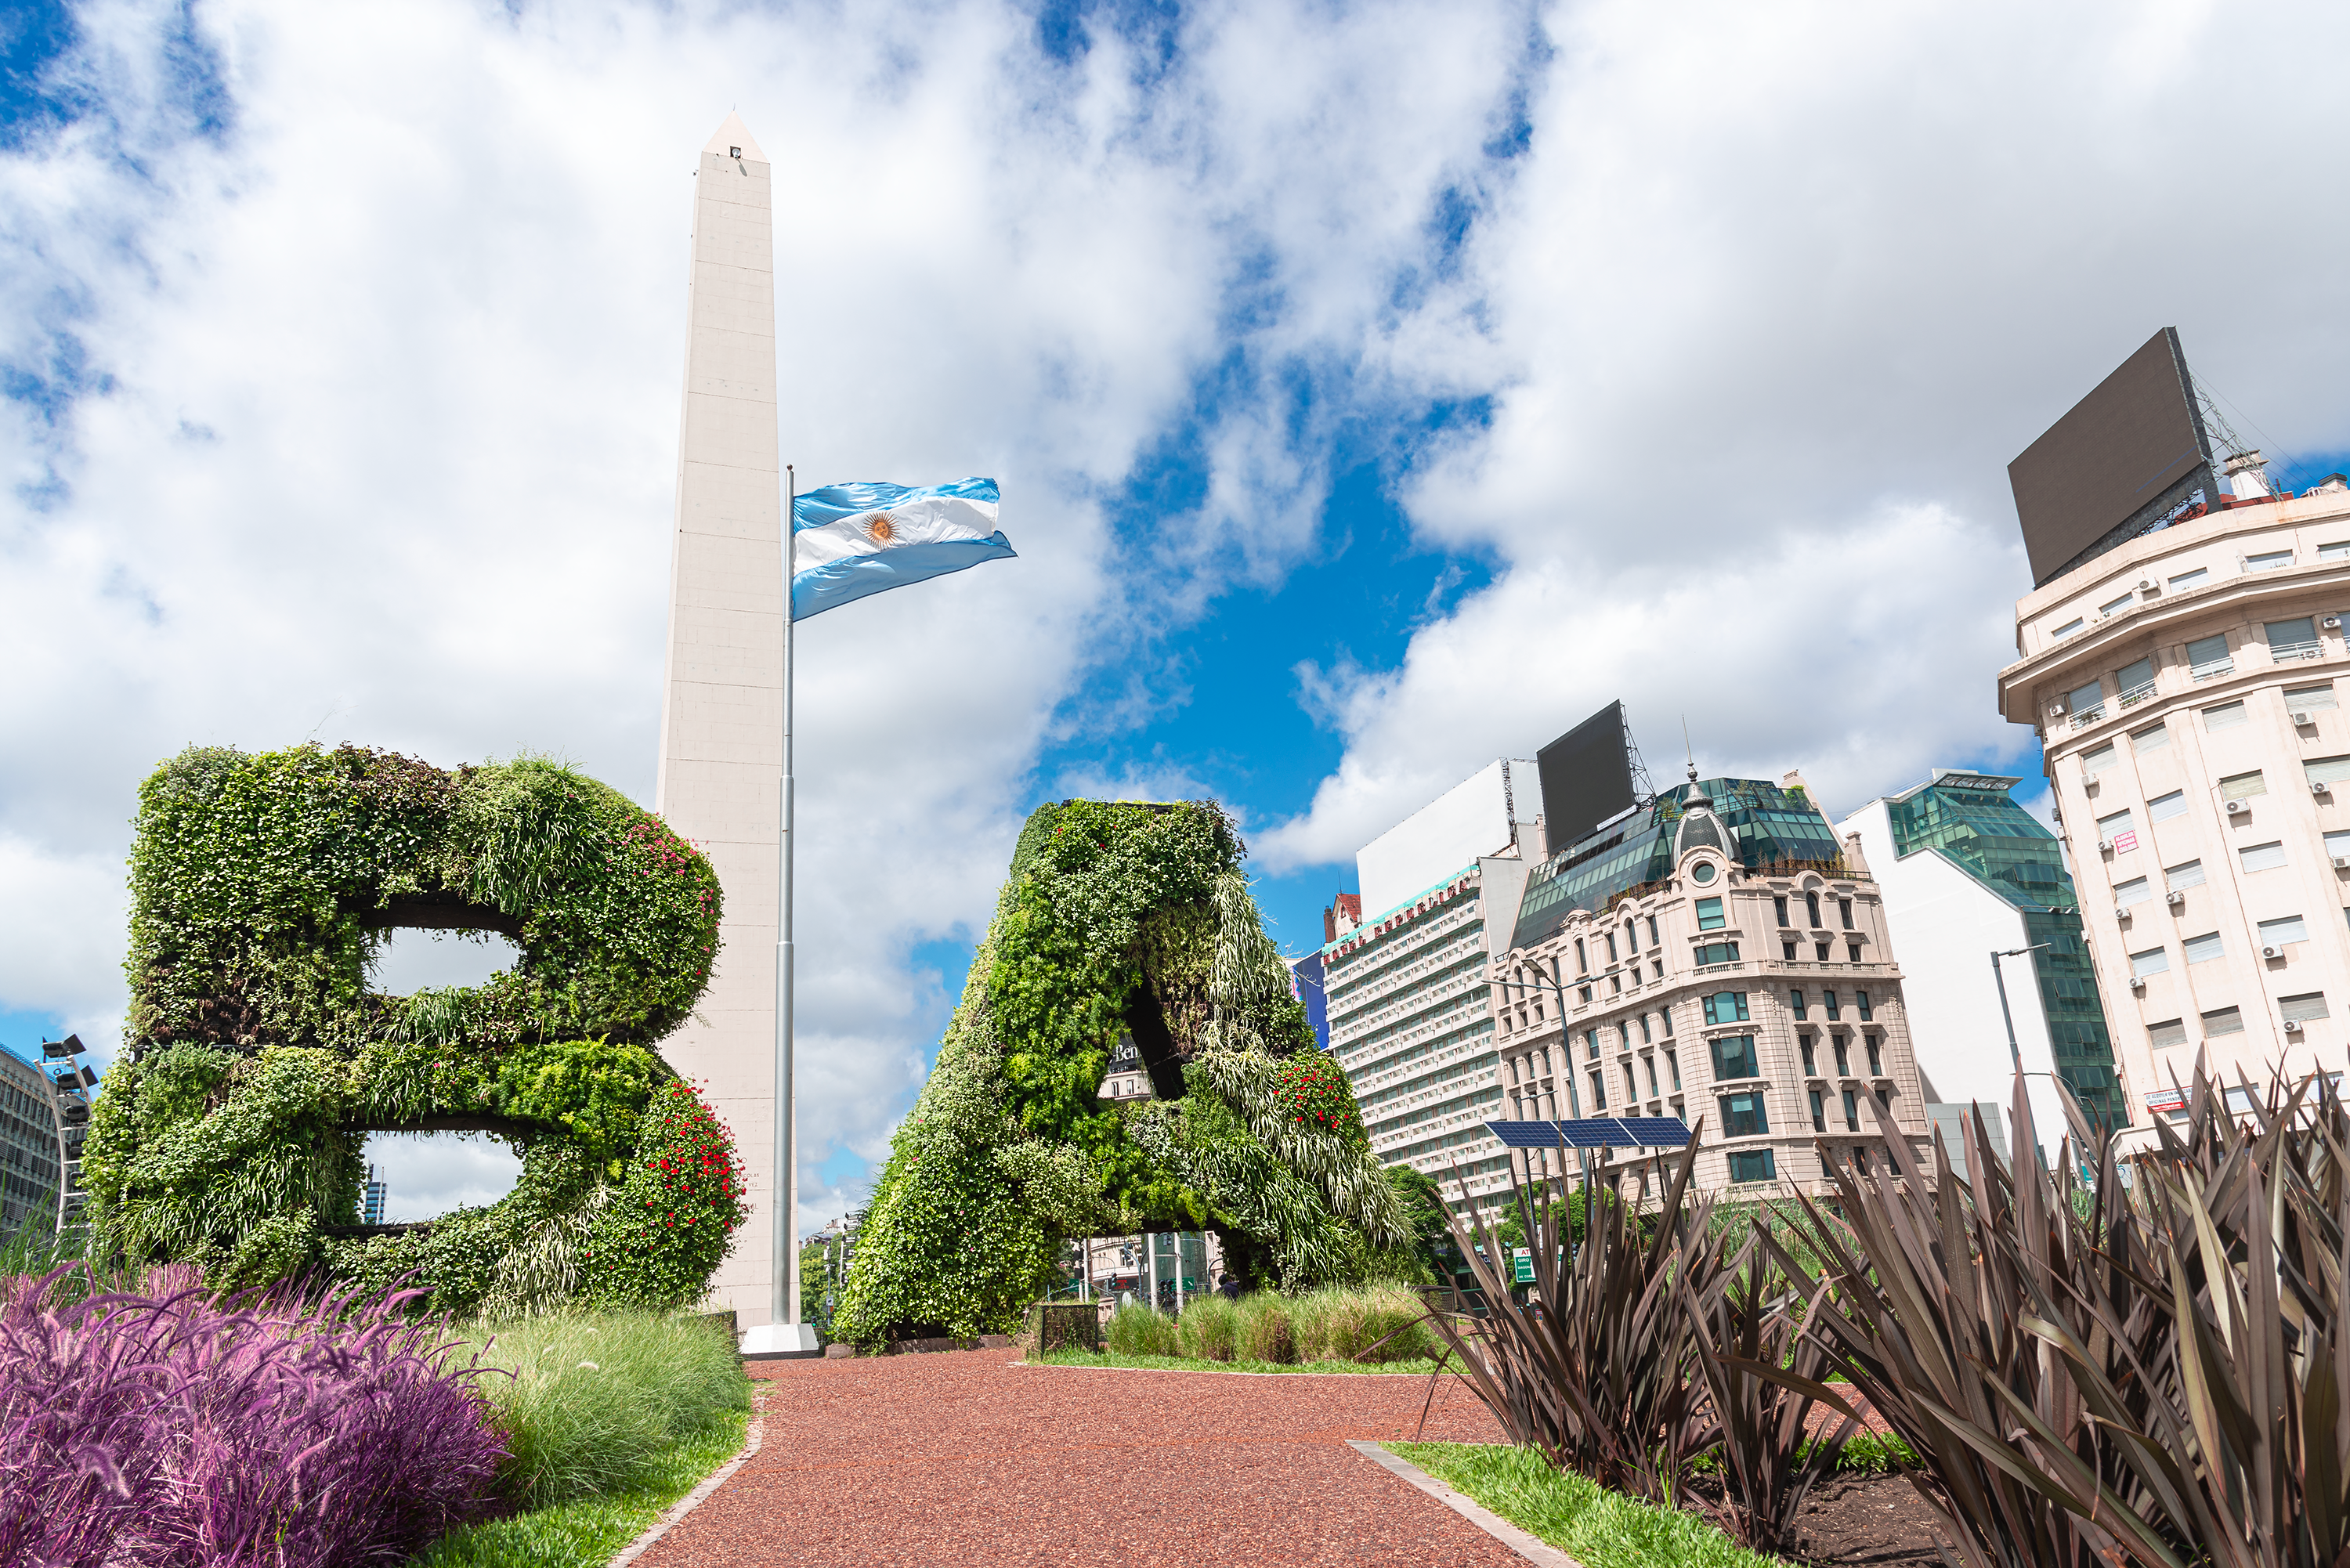 Bienvenidos a Buenos Aires